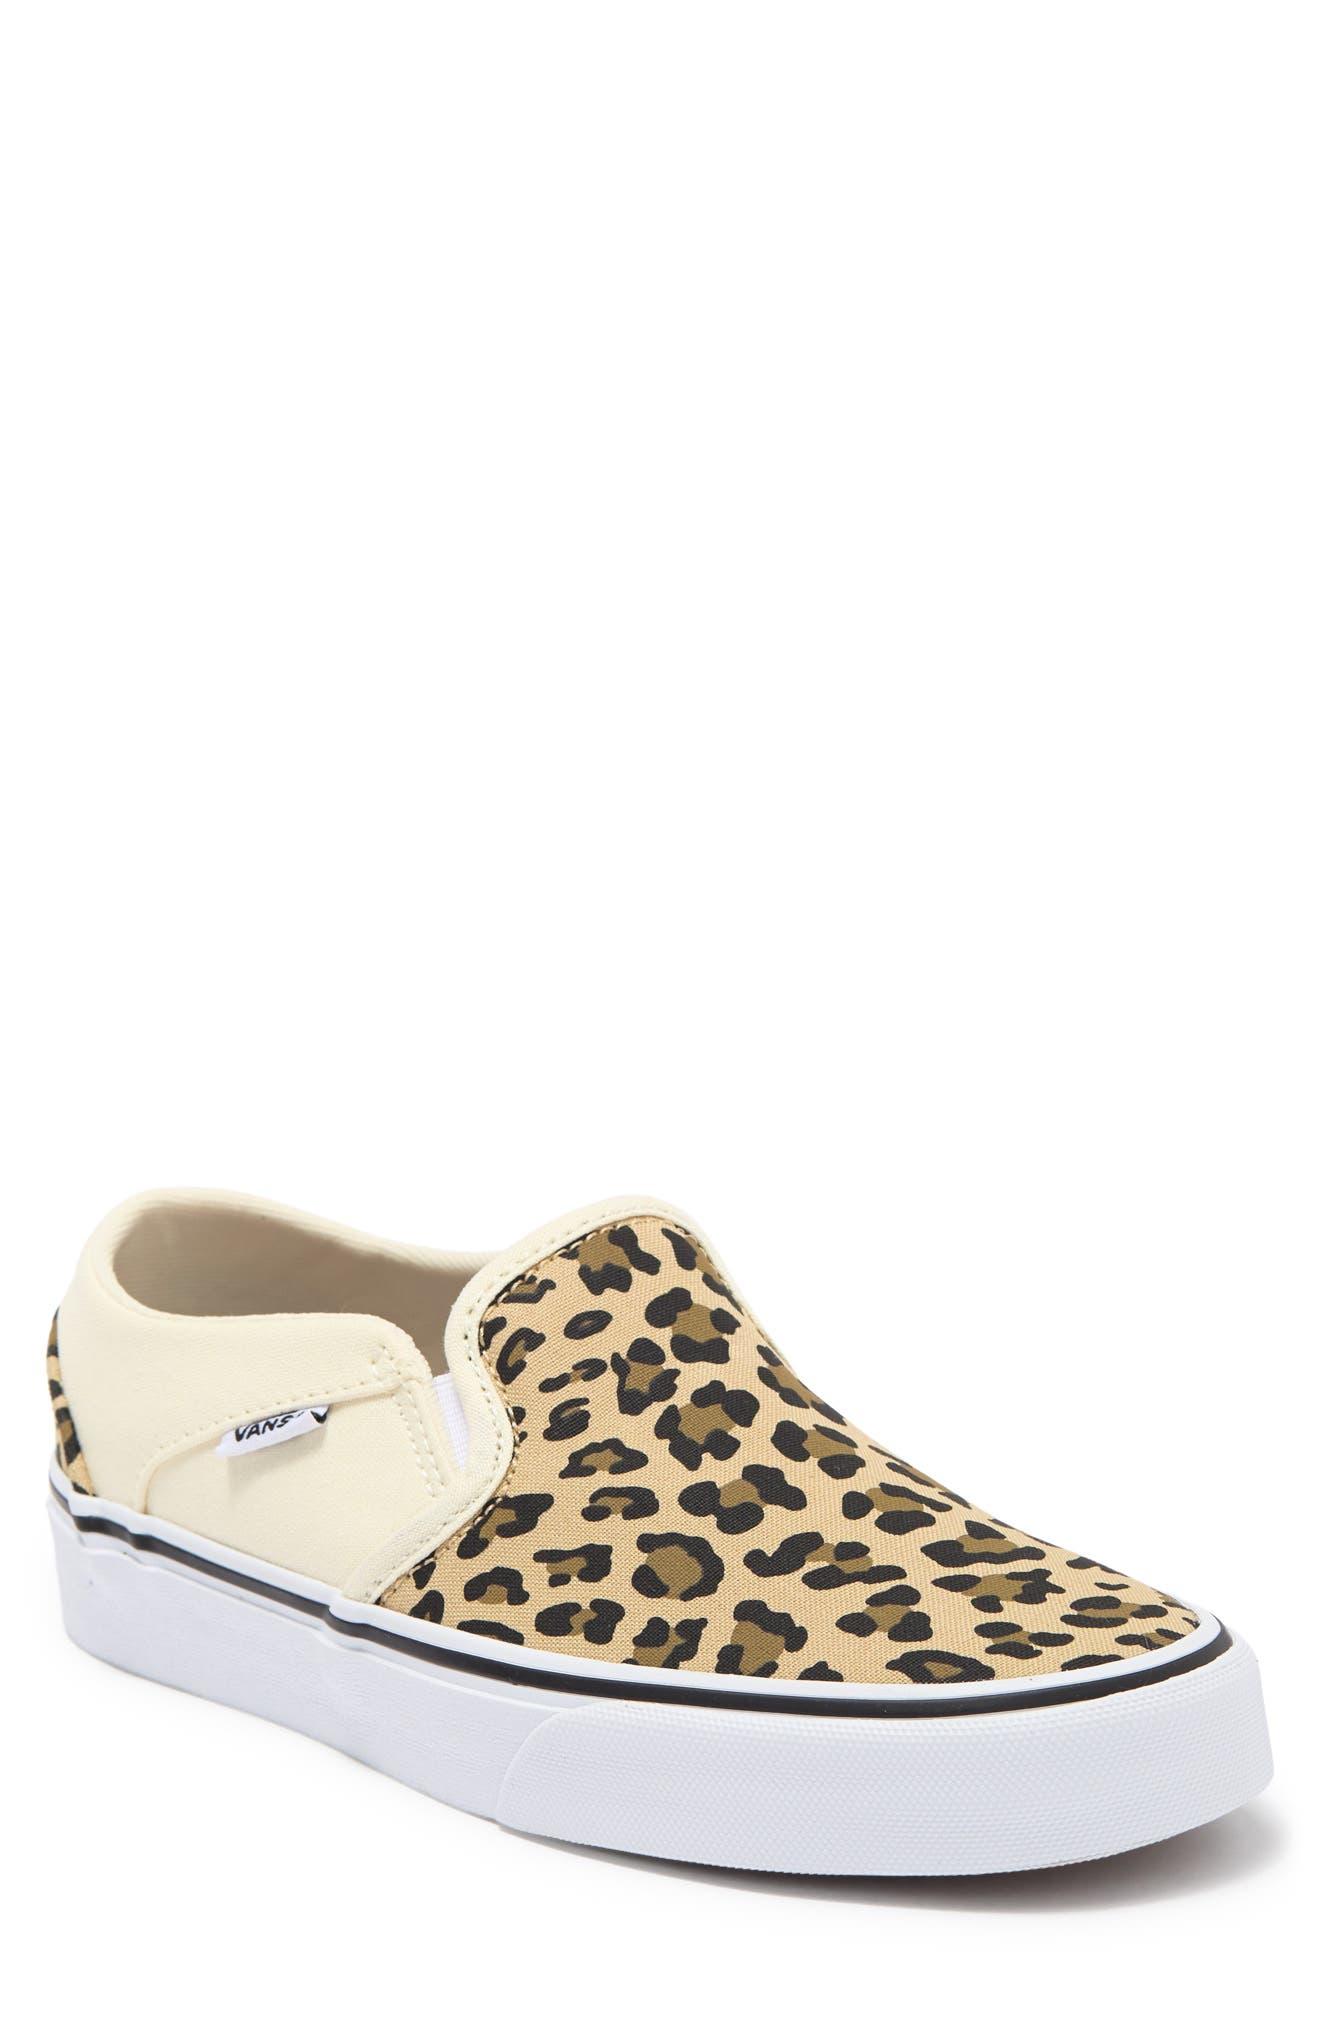 Vans Asher Slip-on Sneaker In Leopard Antique White/white At Nordstrom Rack  | Lyst